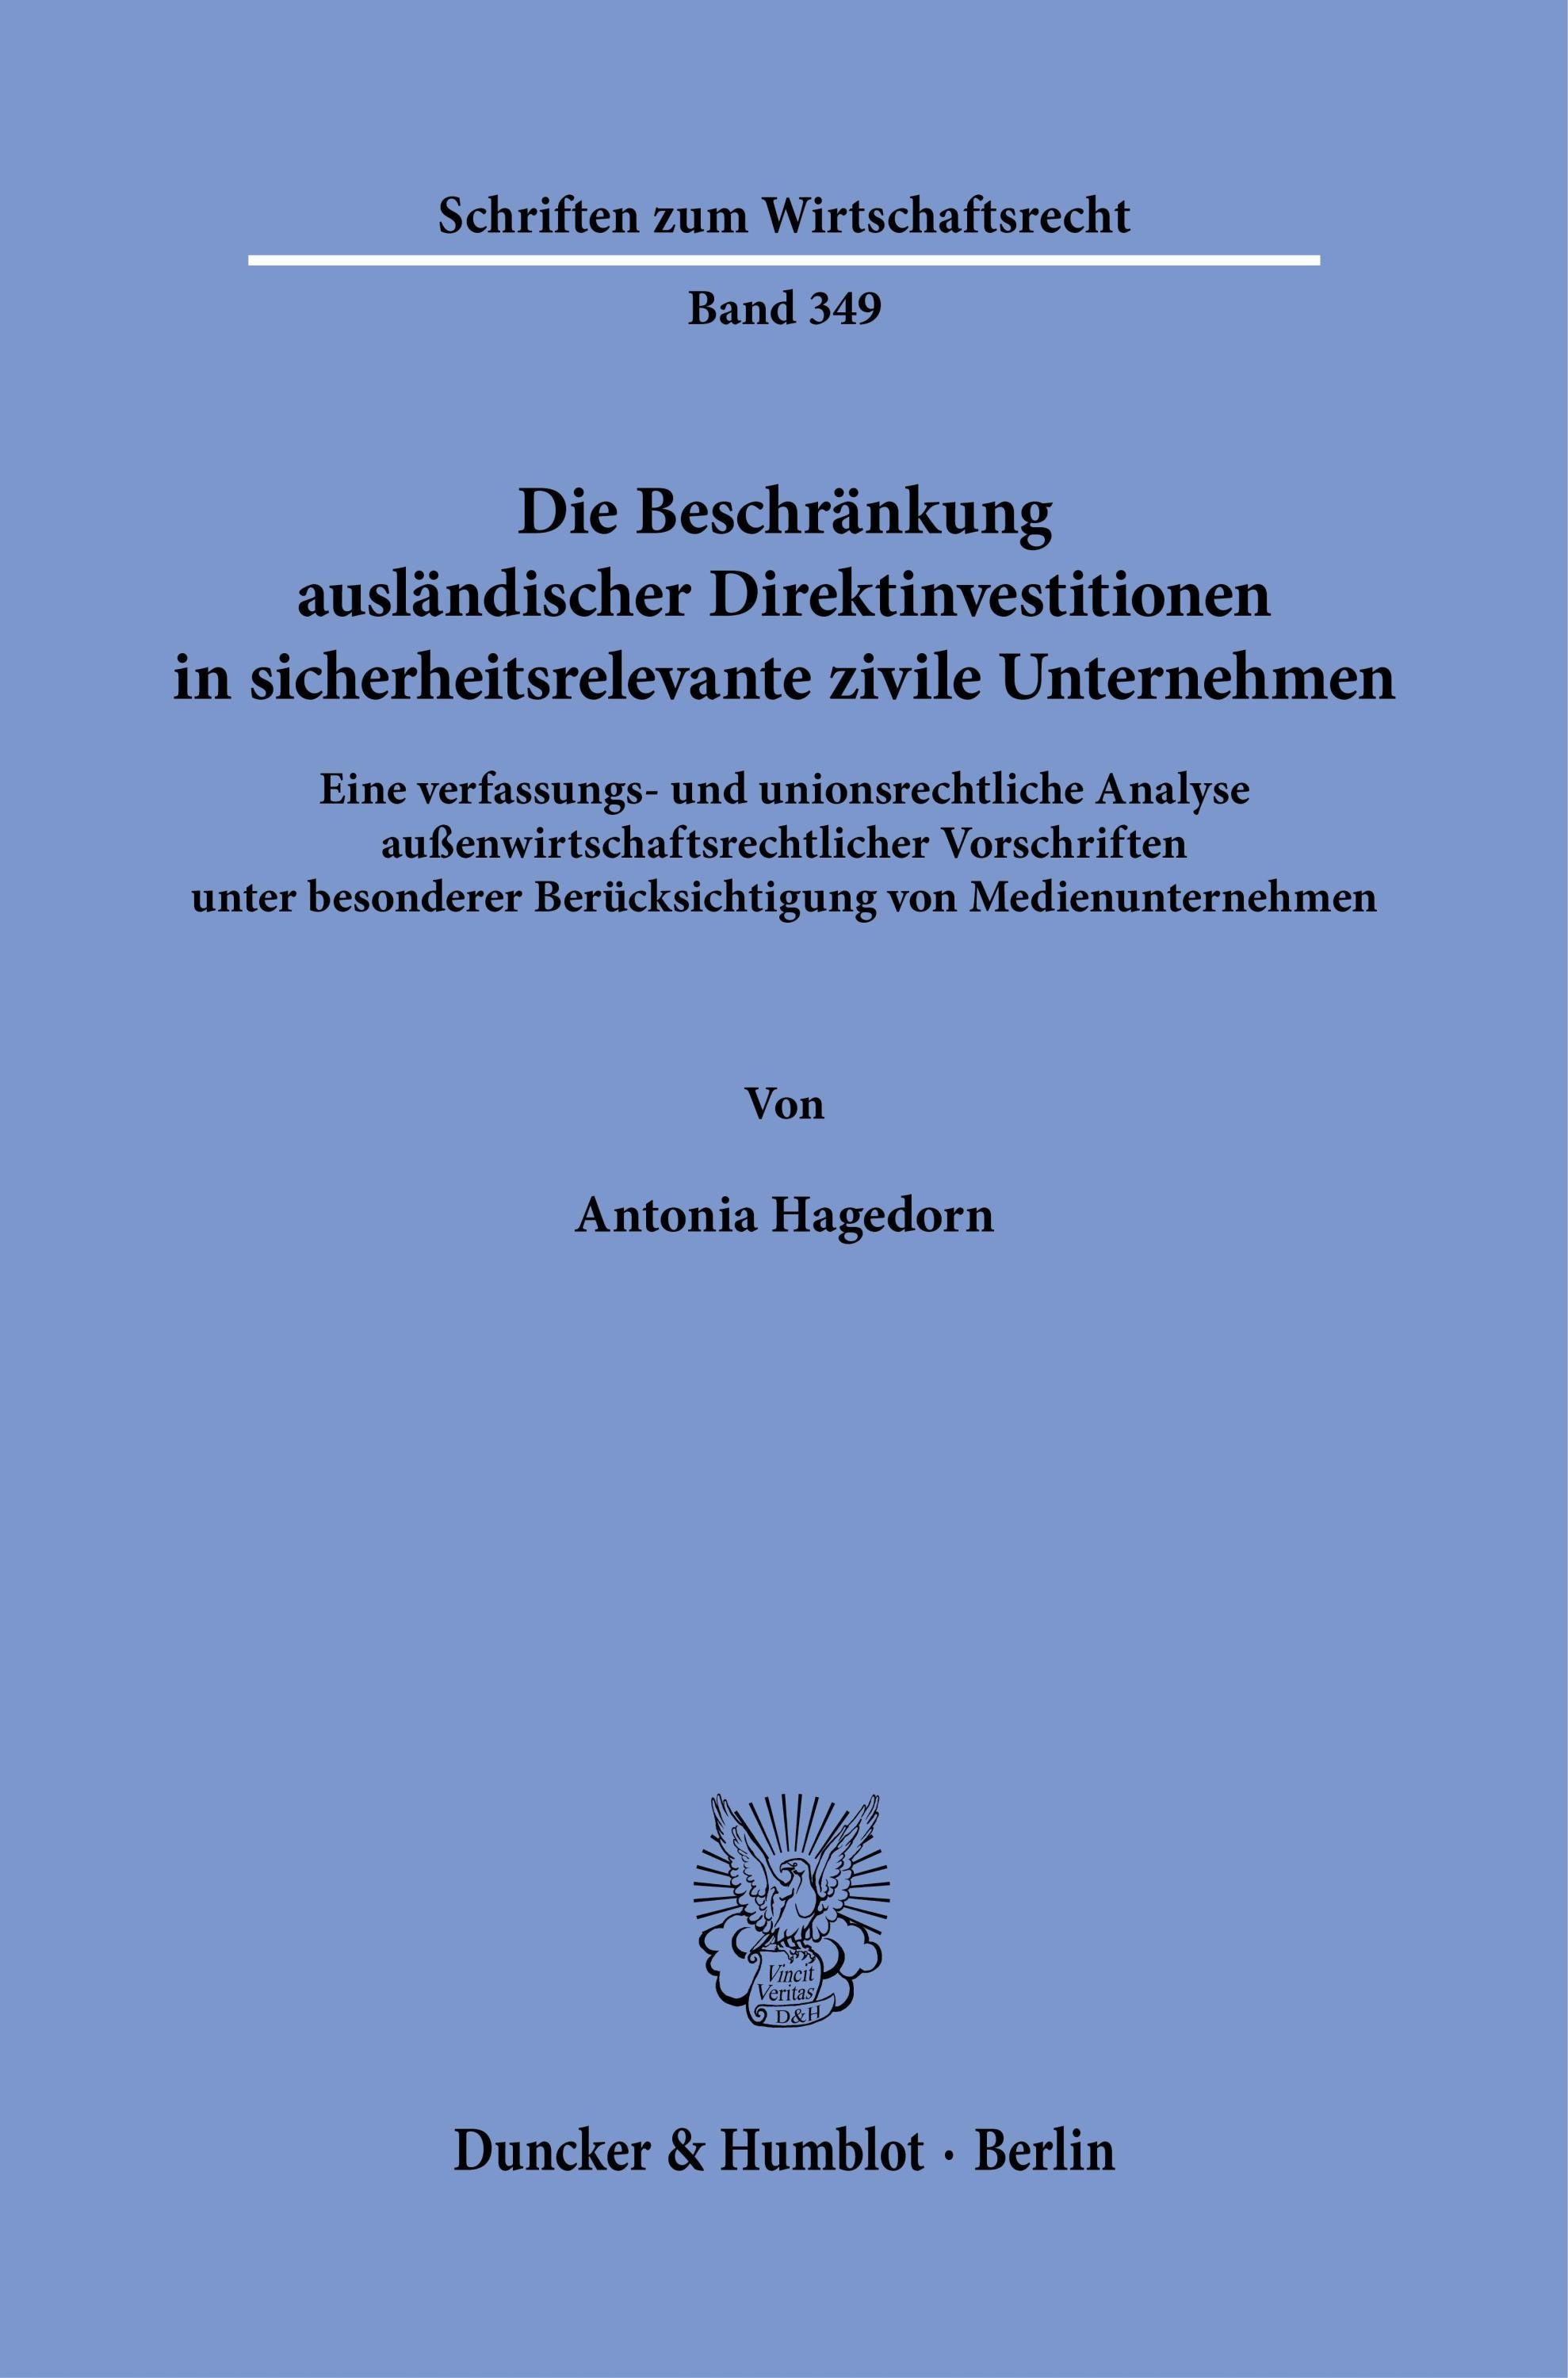 Die Beschränkung Ausländischer Direktinvestitionen In Sicherheitsrelevante Zivile Unternehmen. - Antonia Hagedorn  Taschenbuch